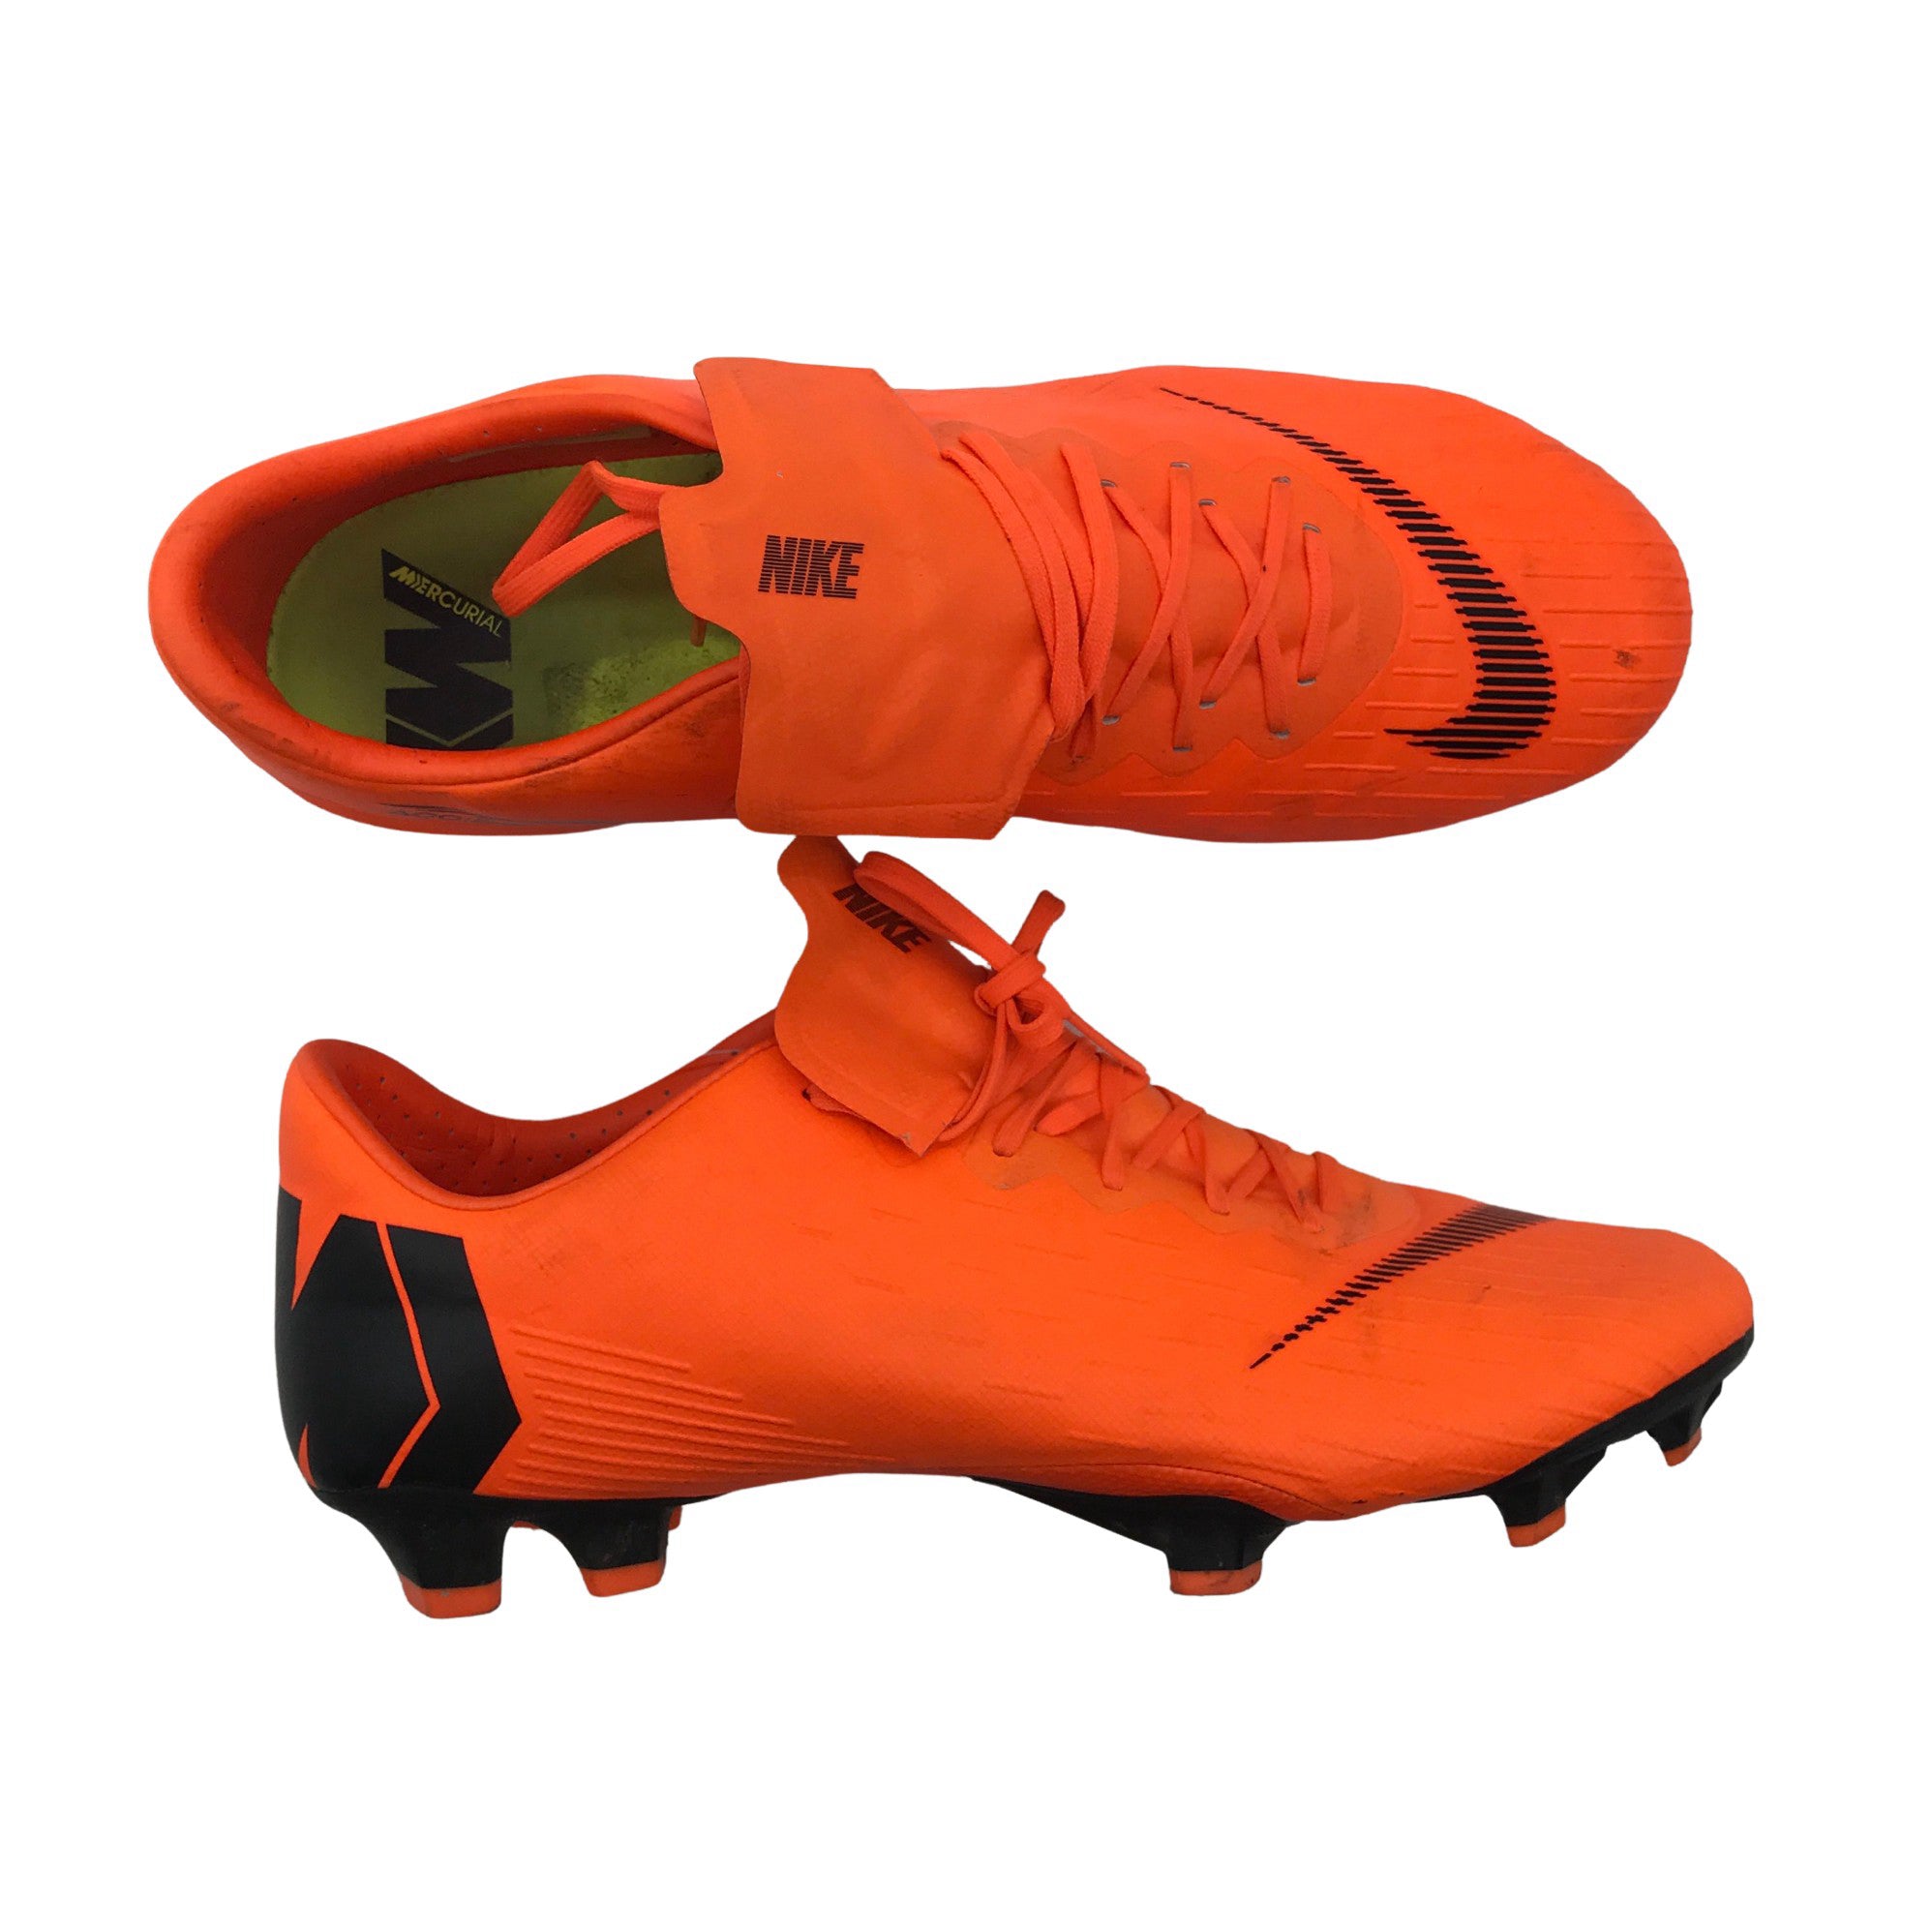 Unisex Nike boots, 44 (Orange) Emmy